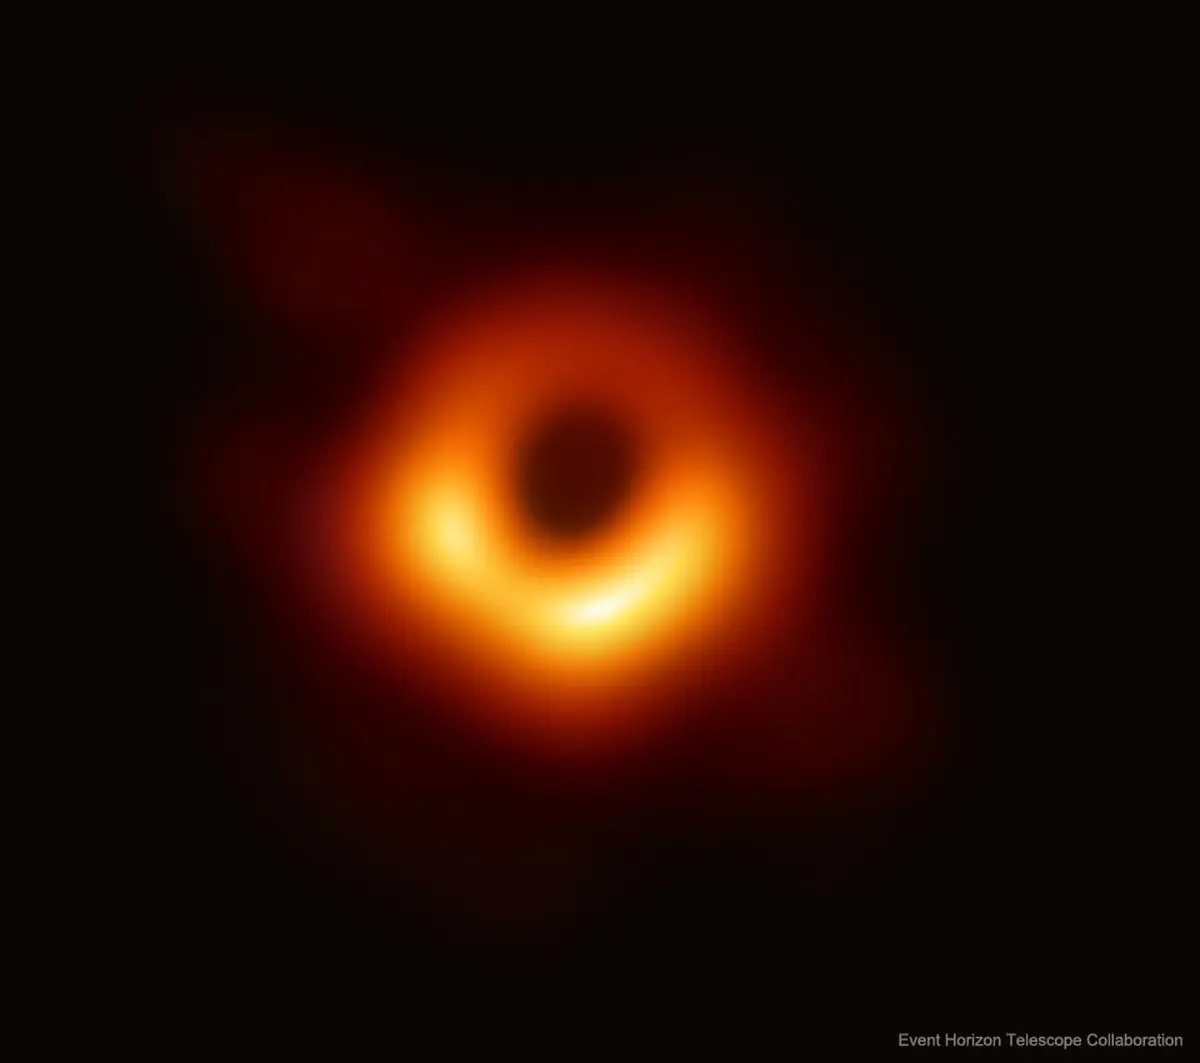 تصویر روز ناسا|پروژه تلسکوپ افق رویداد و رصد سیاهچاله‌ها